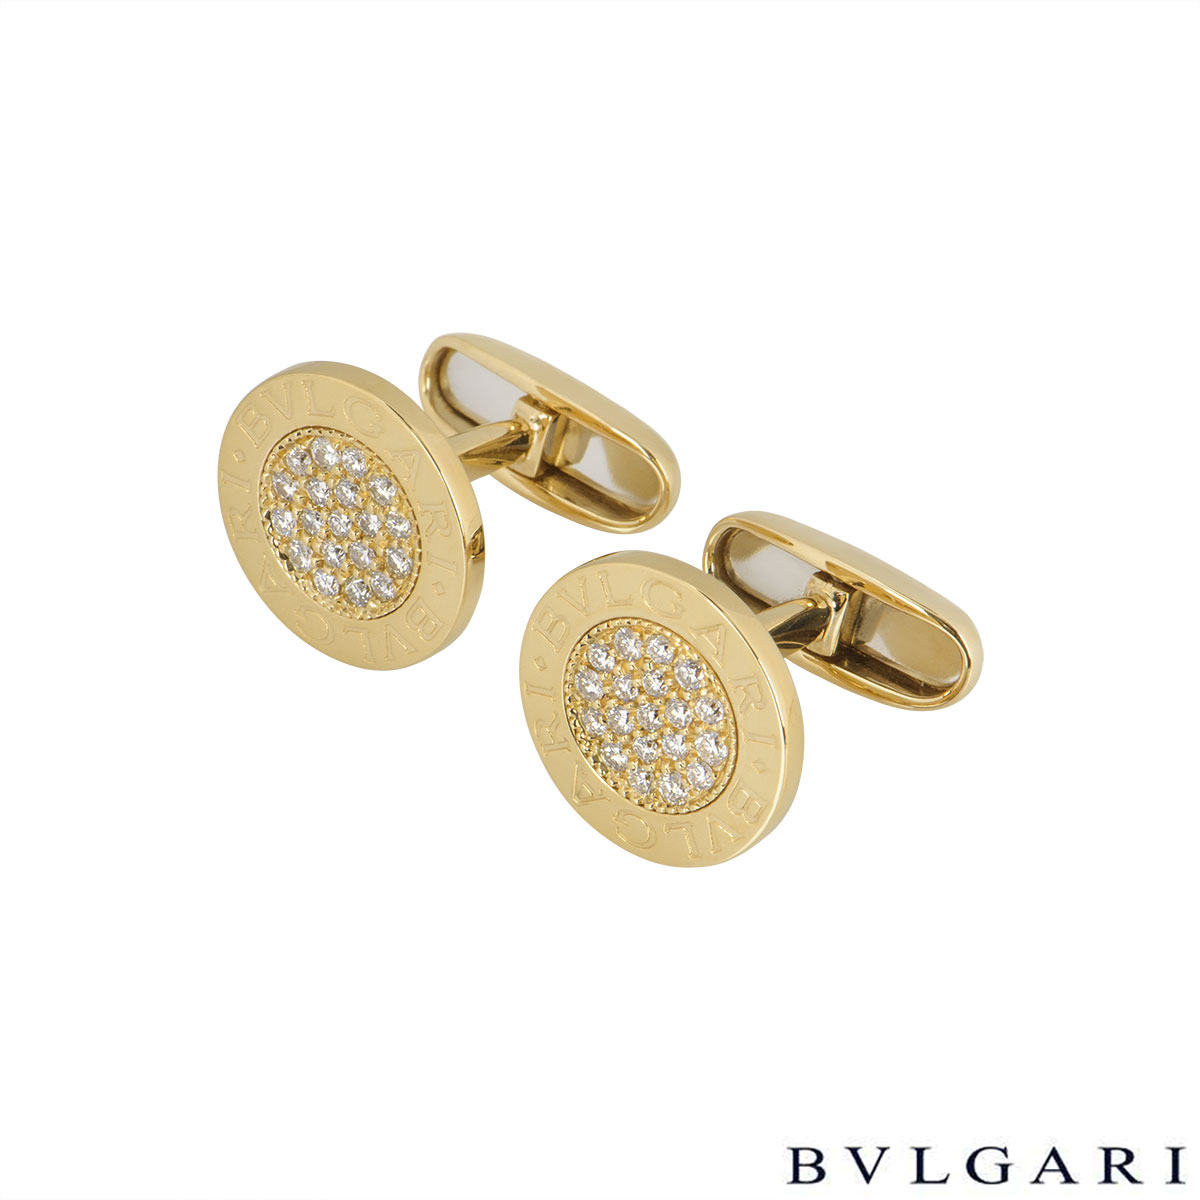 bvlgari diamond cufflinks